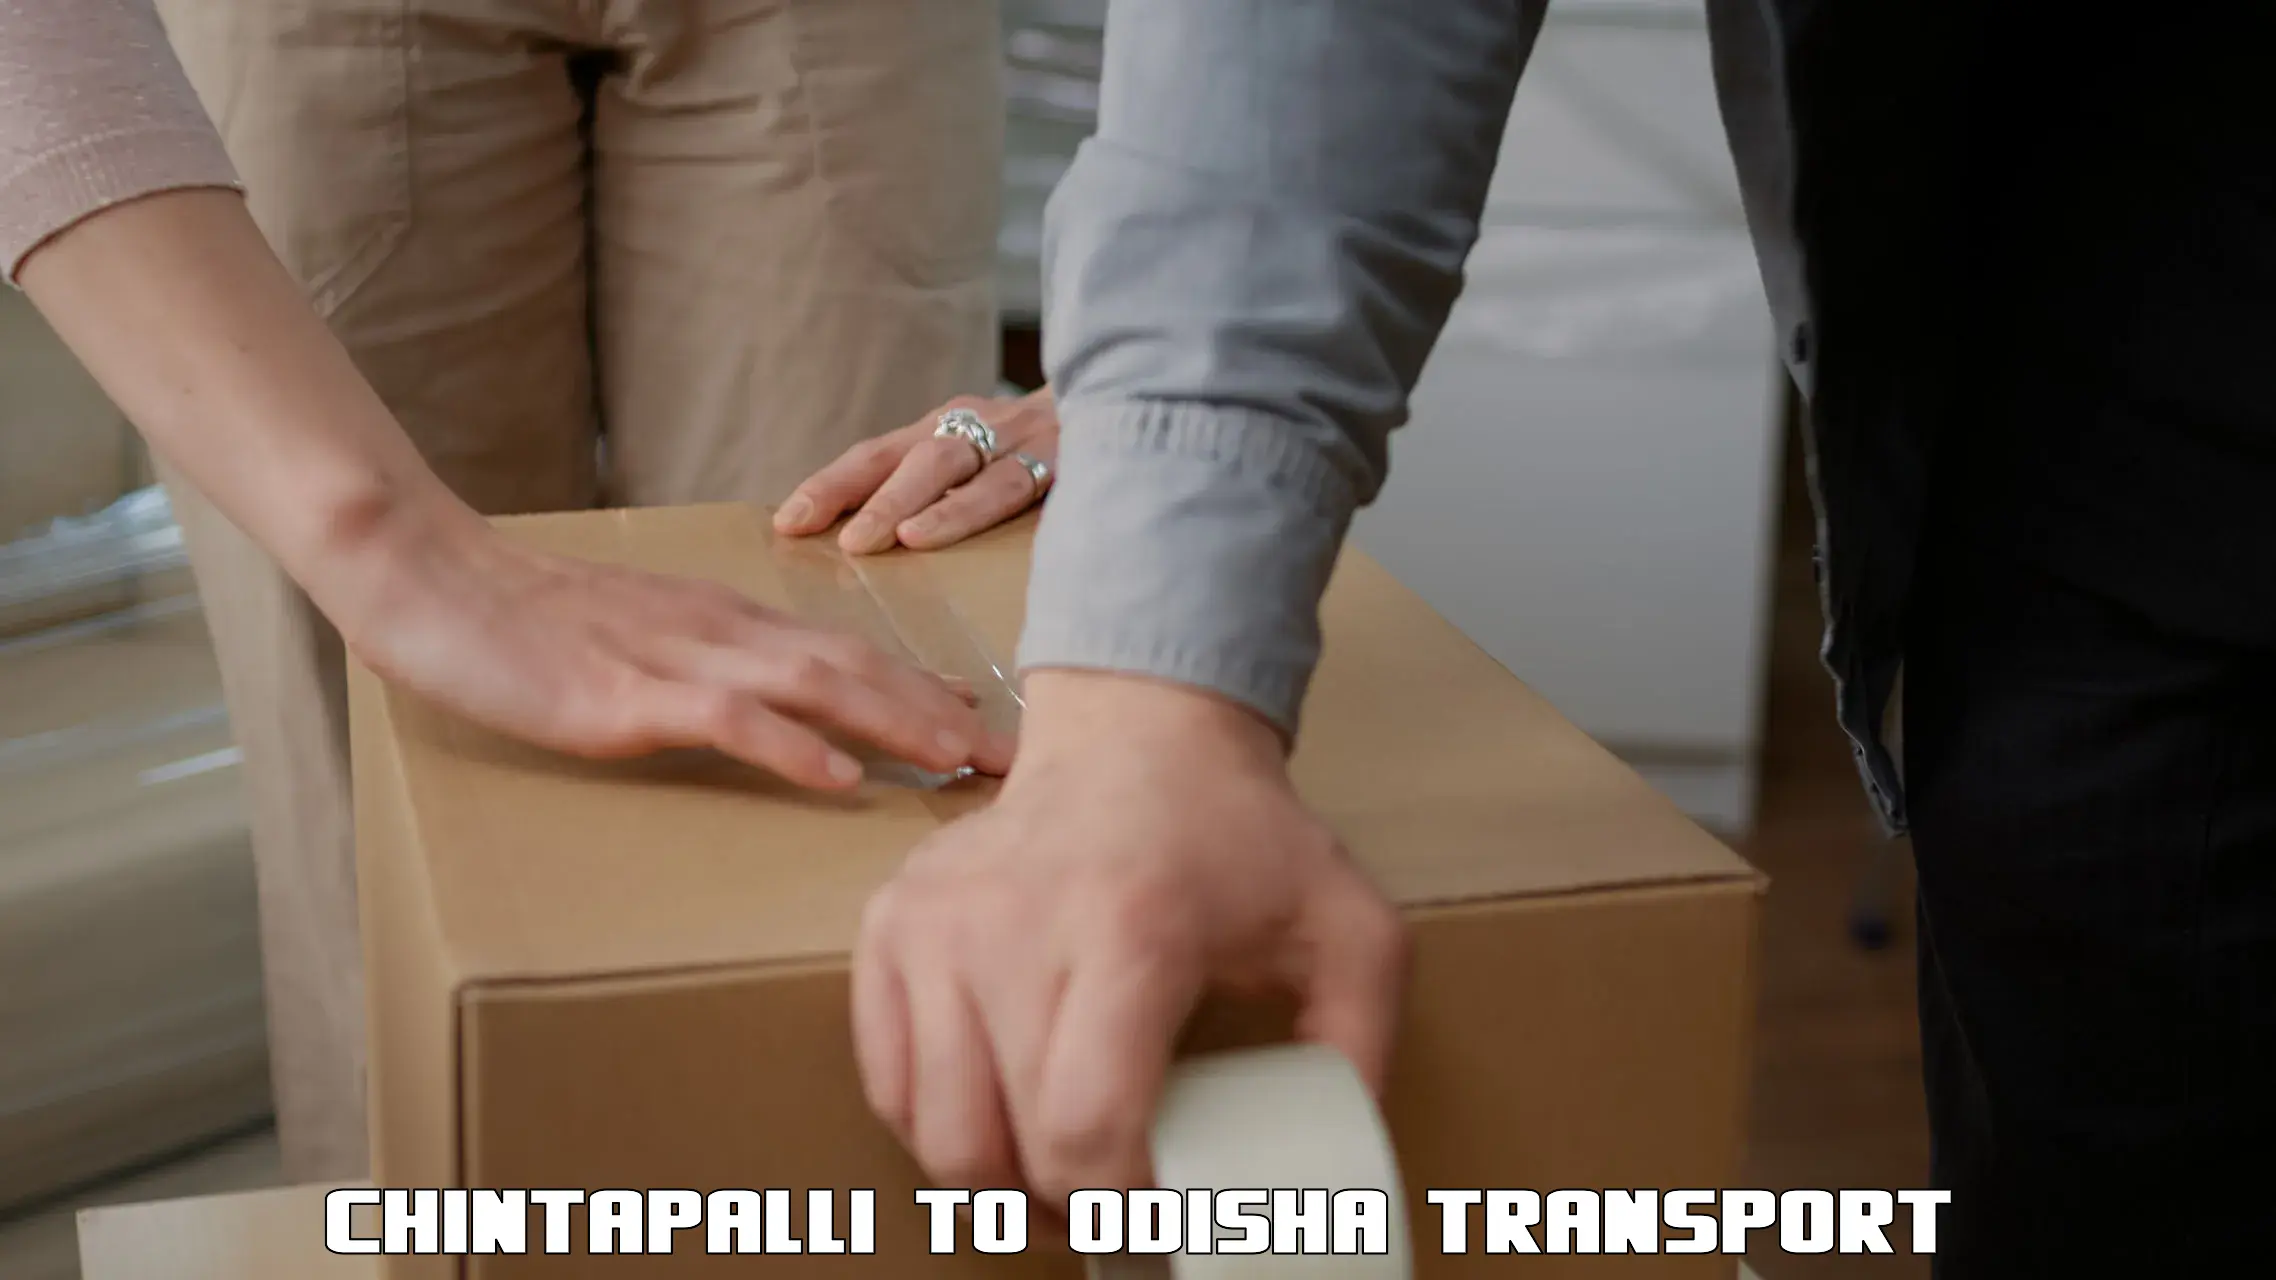 Nearest transport service Chintapalli to Telkoi